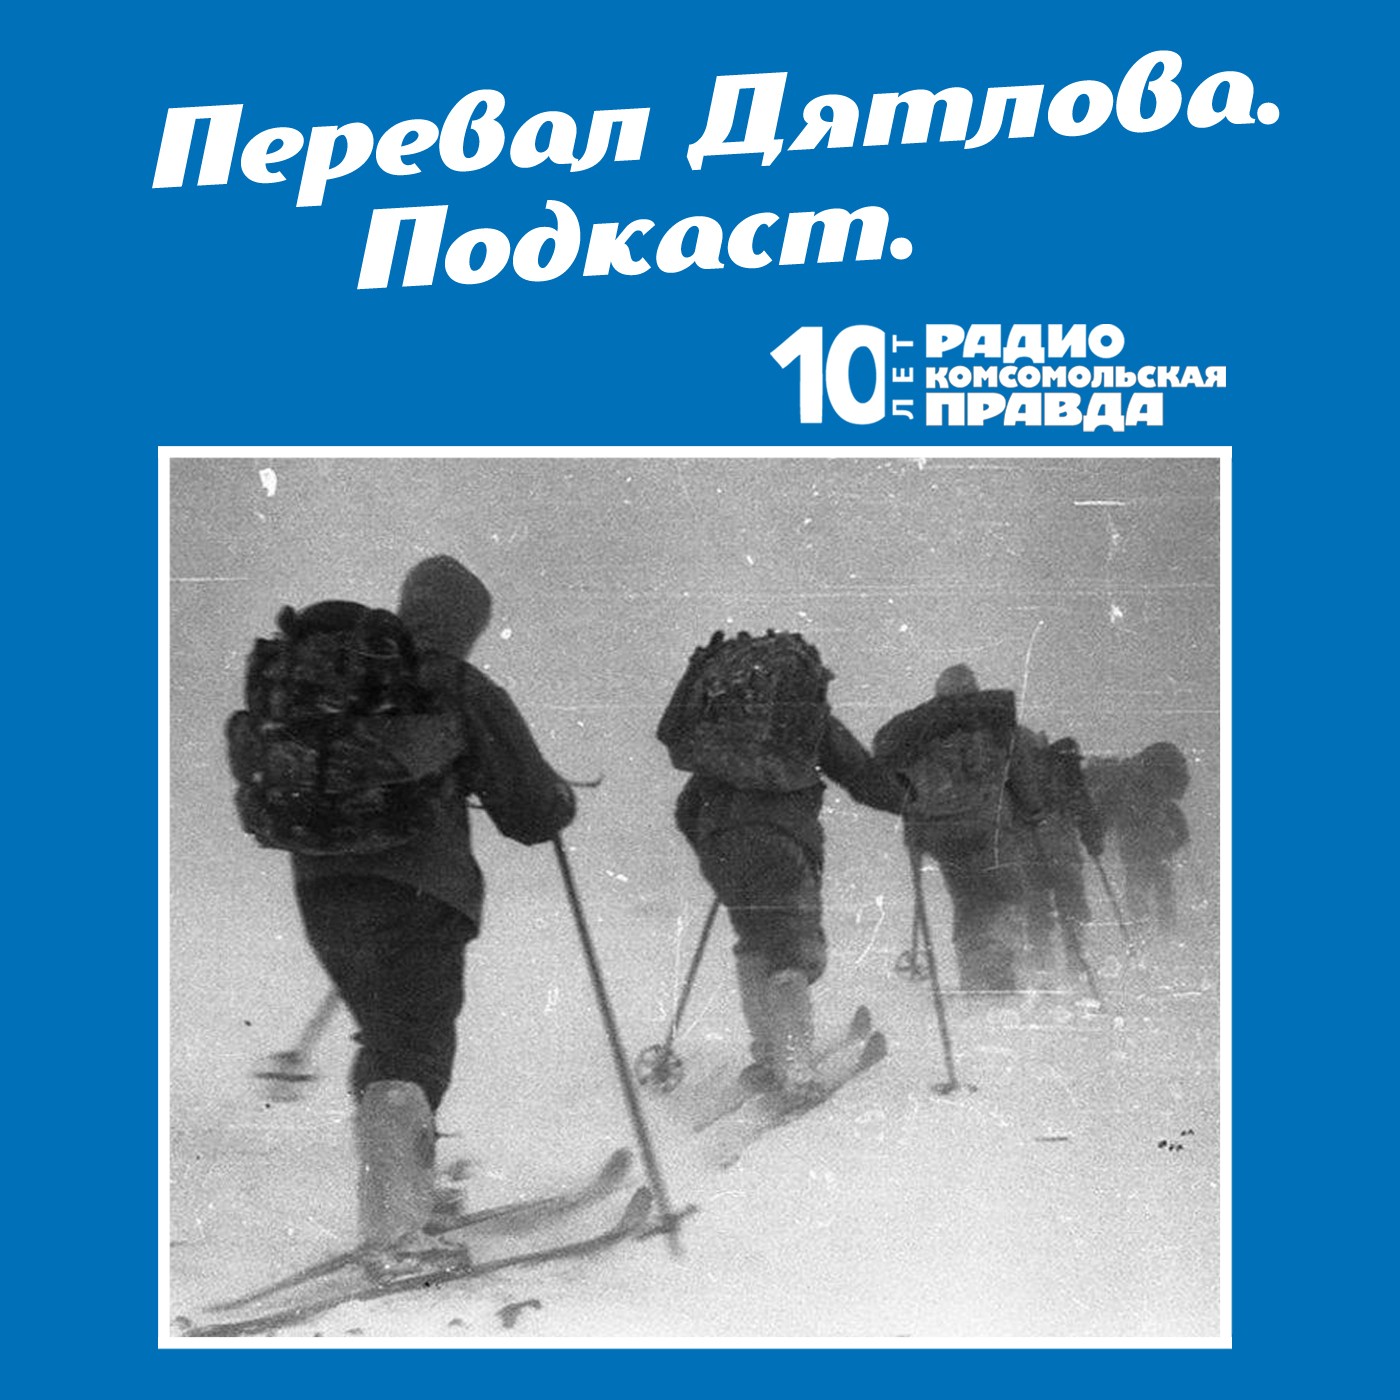 Скачать Трагедия на перевале Дятлова: 64 версии загадочной гибели туристов в 1959 году. Часть 77 и 78 - Радио «Комсомольская правда»